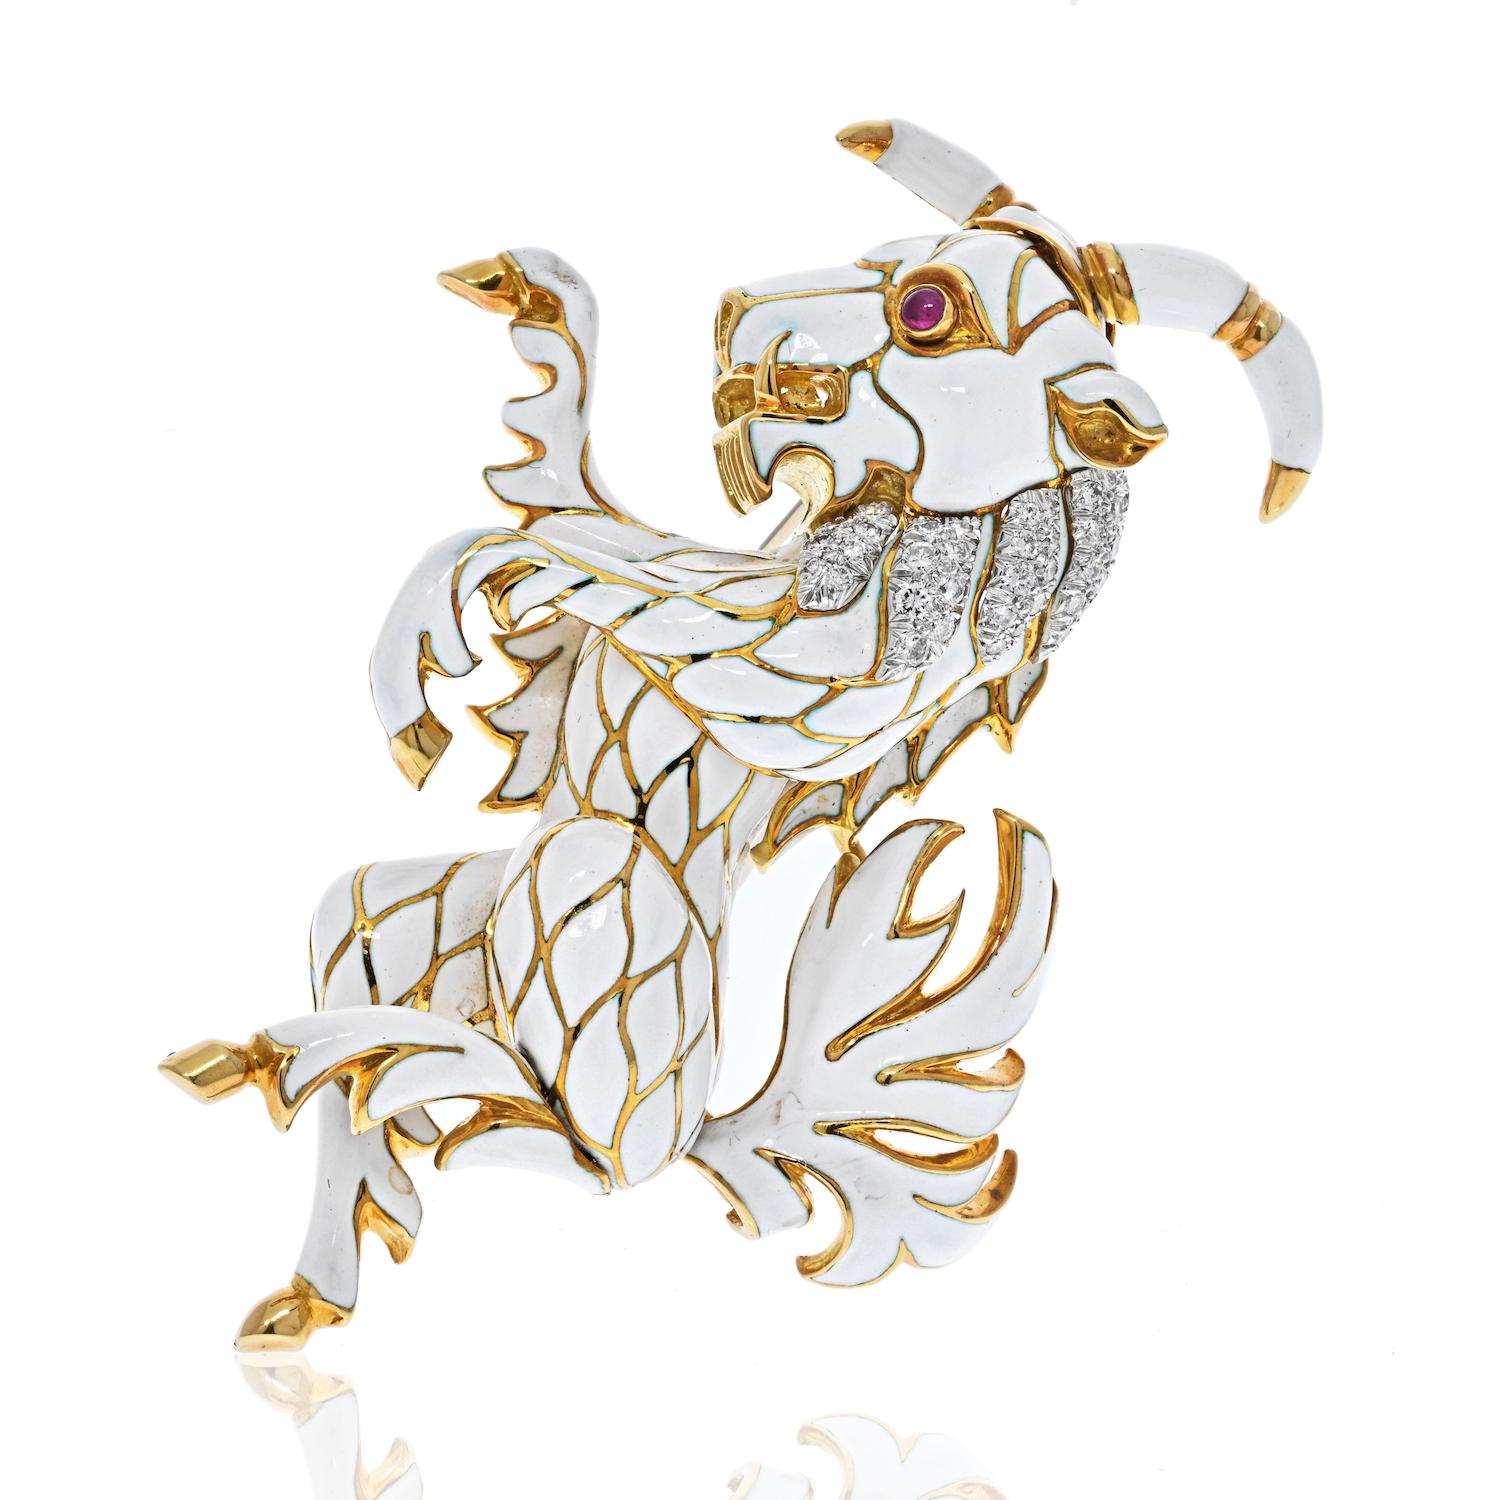 Laissez-vous séduire par le charme fantaisiste de cette exquise broche en forme de chèvre, véritable chef-d'œuvre conçu par Webb. Réalisée en or 18 carats et en platine, cette broche témoigne du savoir-faire et de l'attention portée aux détails.

La